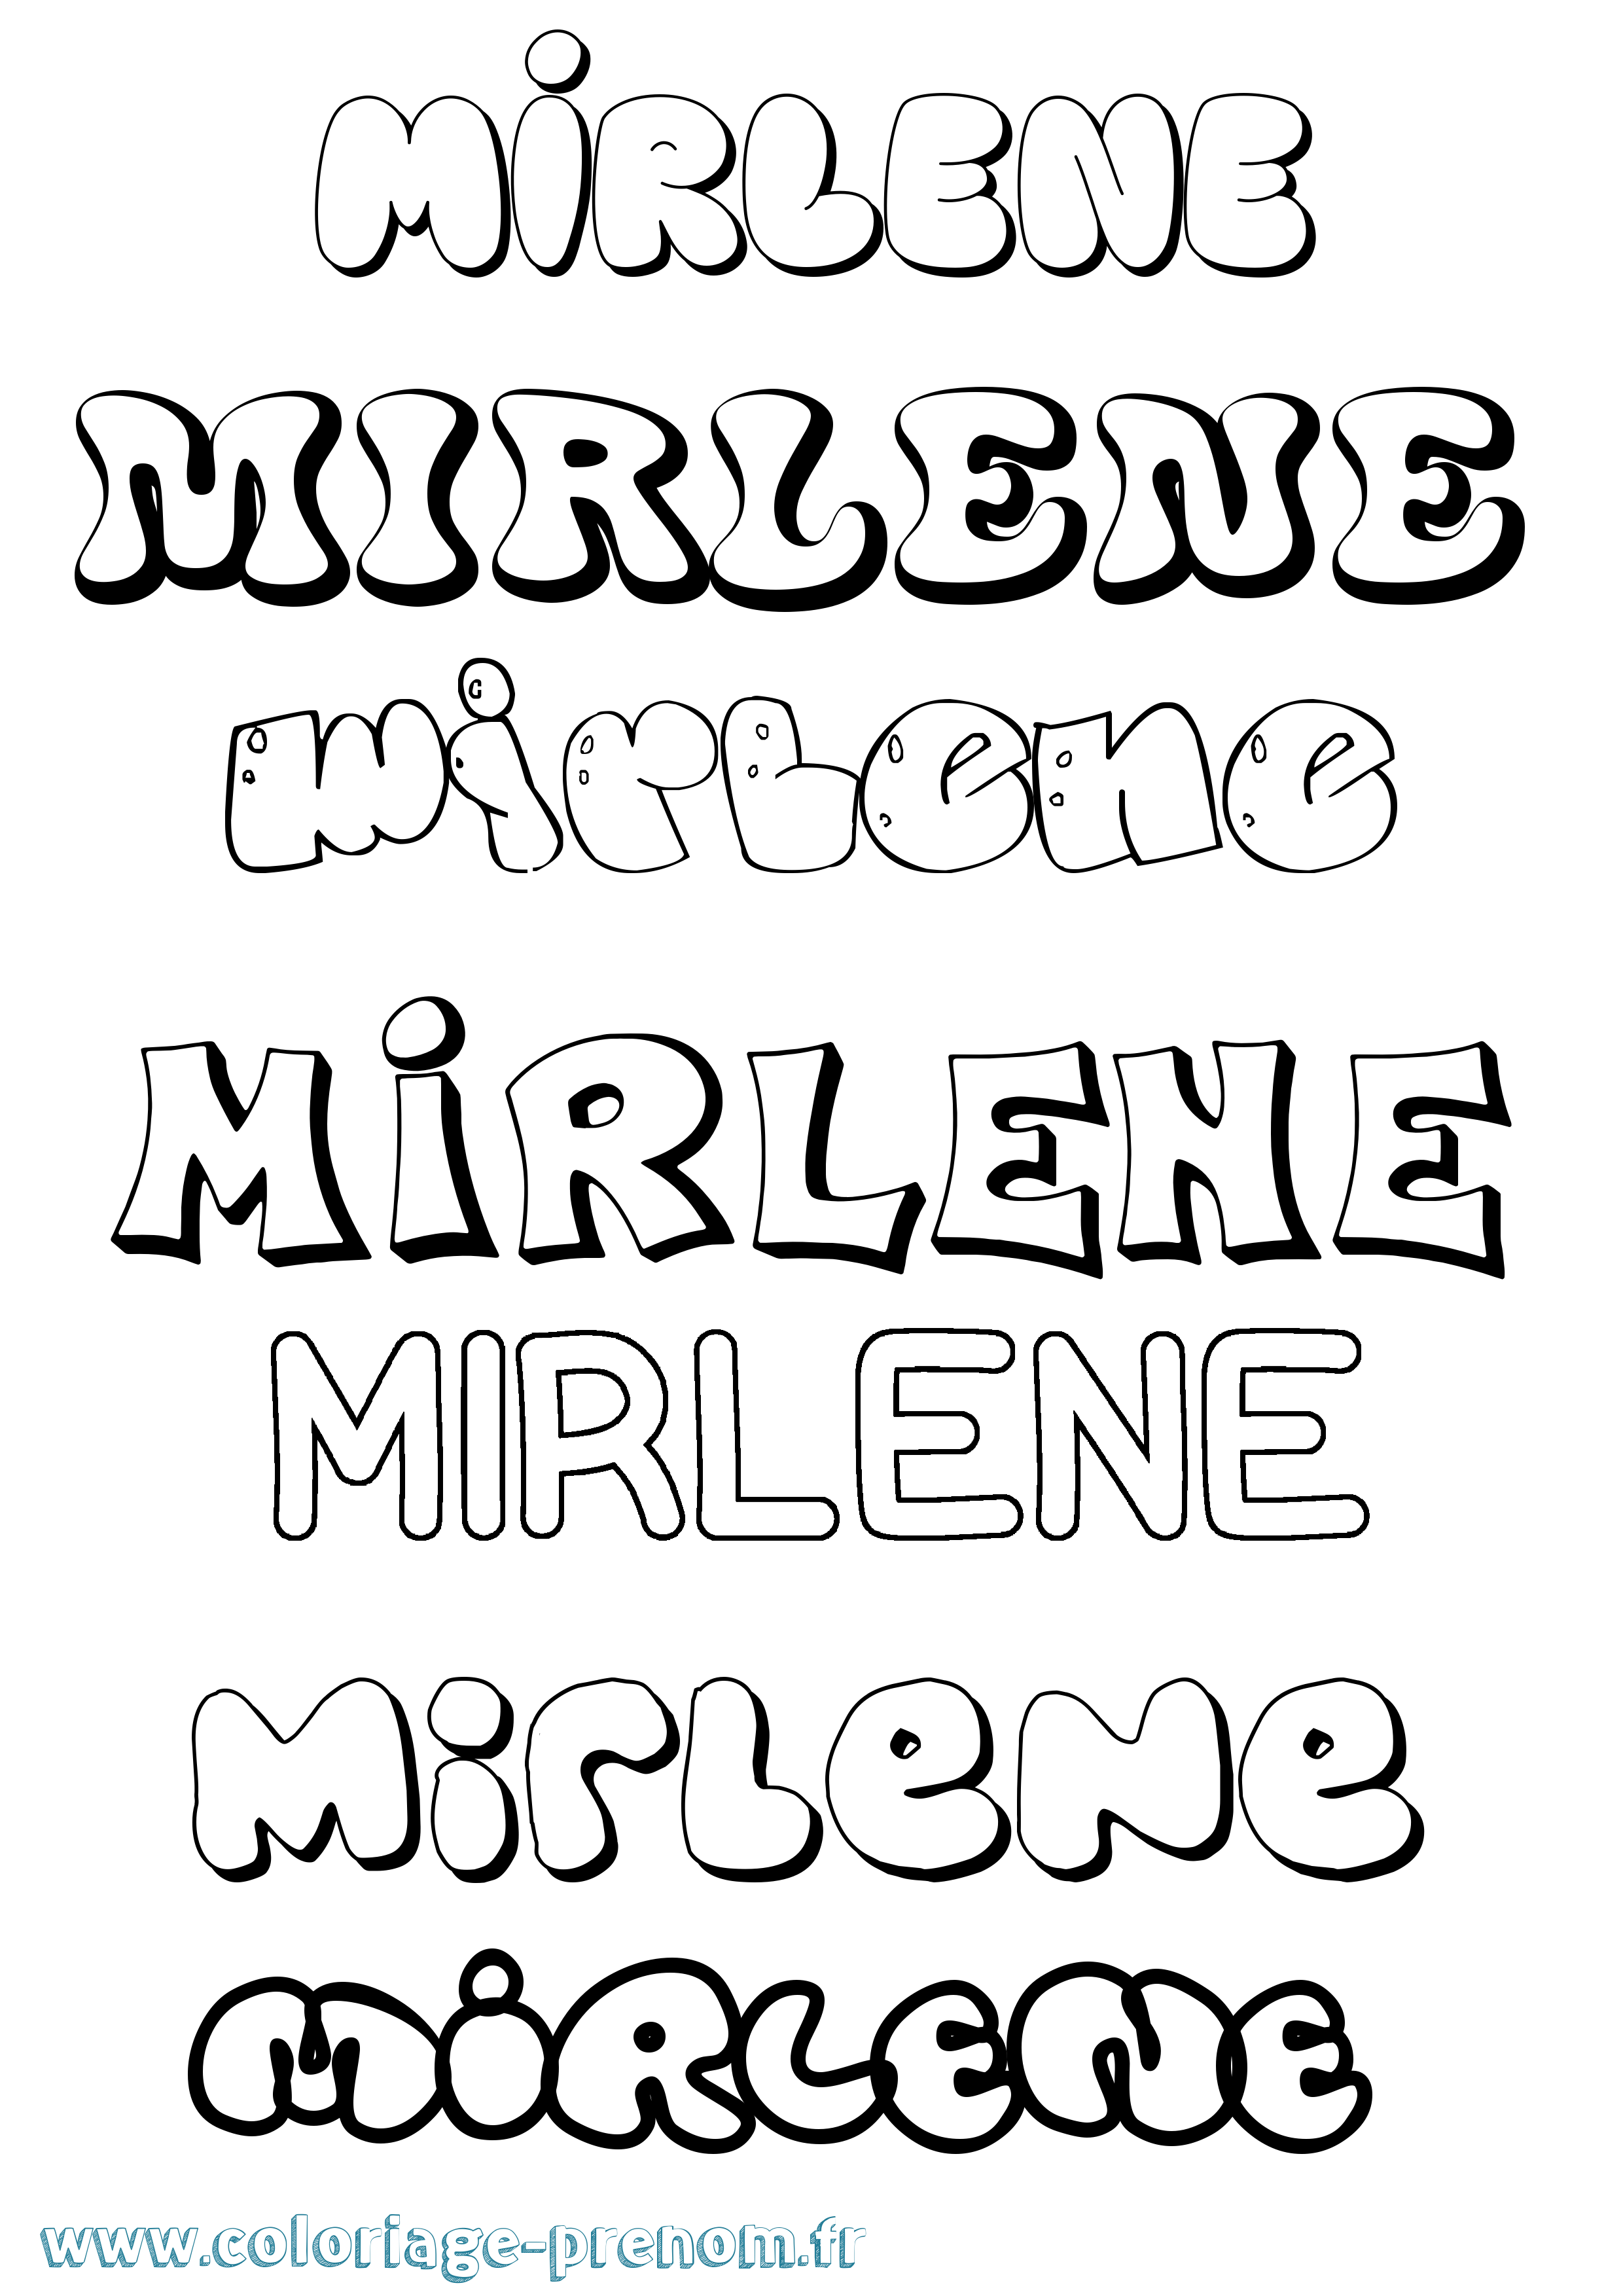 Coloriage prénom Mirlene Bubble